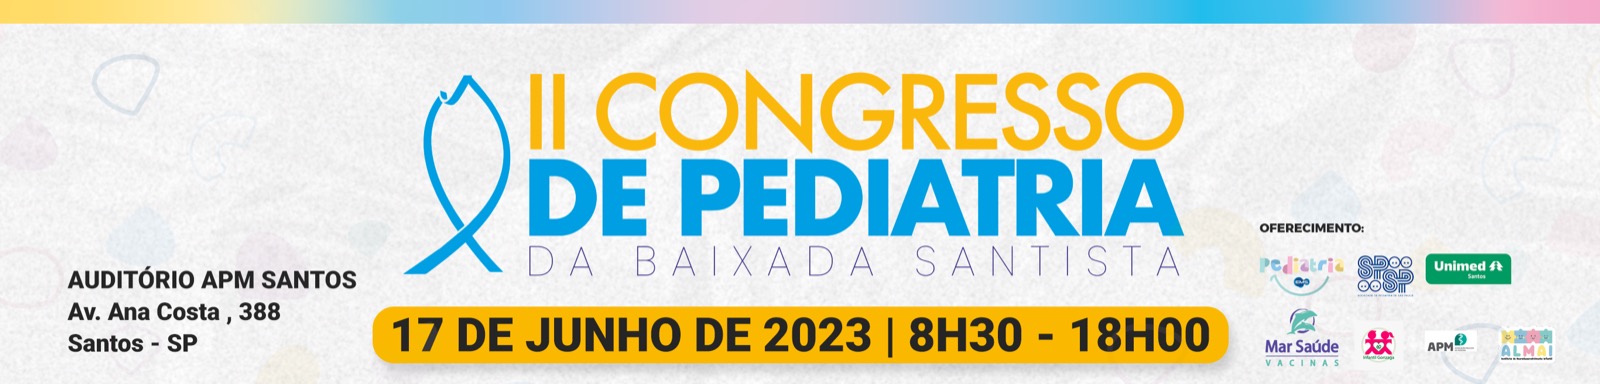 2º Congresso de Pediatria da Baixada Santista - Médico Exponencial EMS